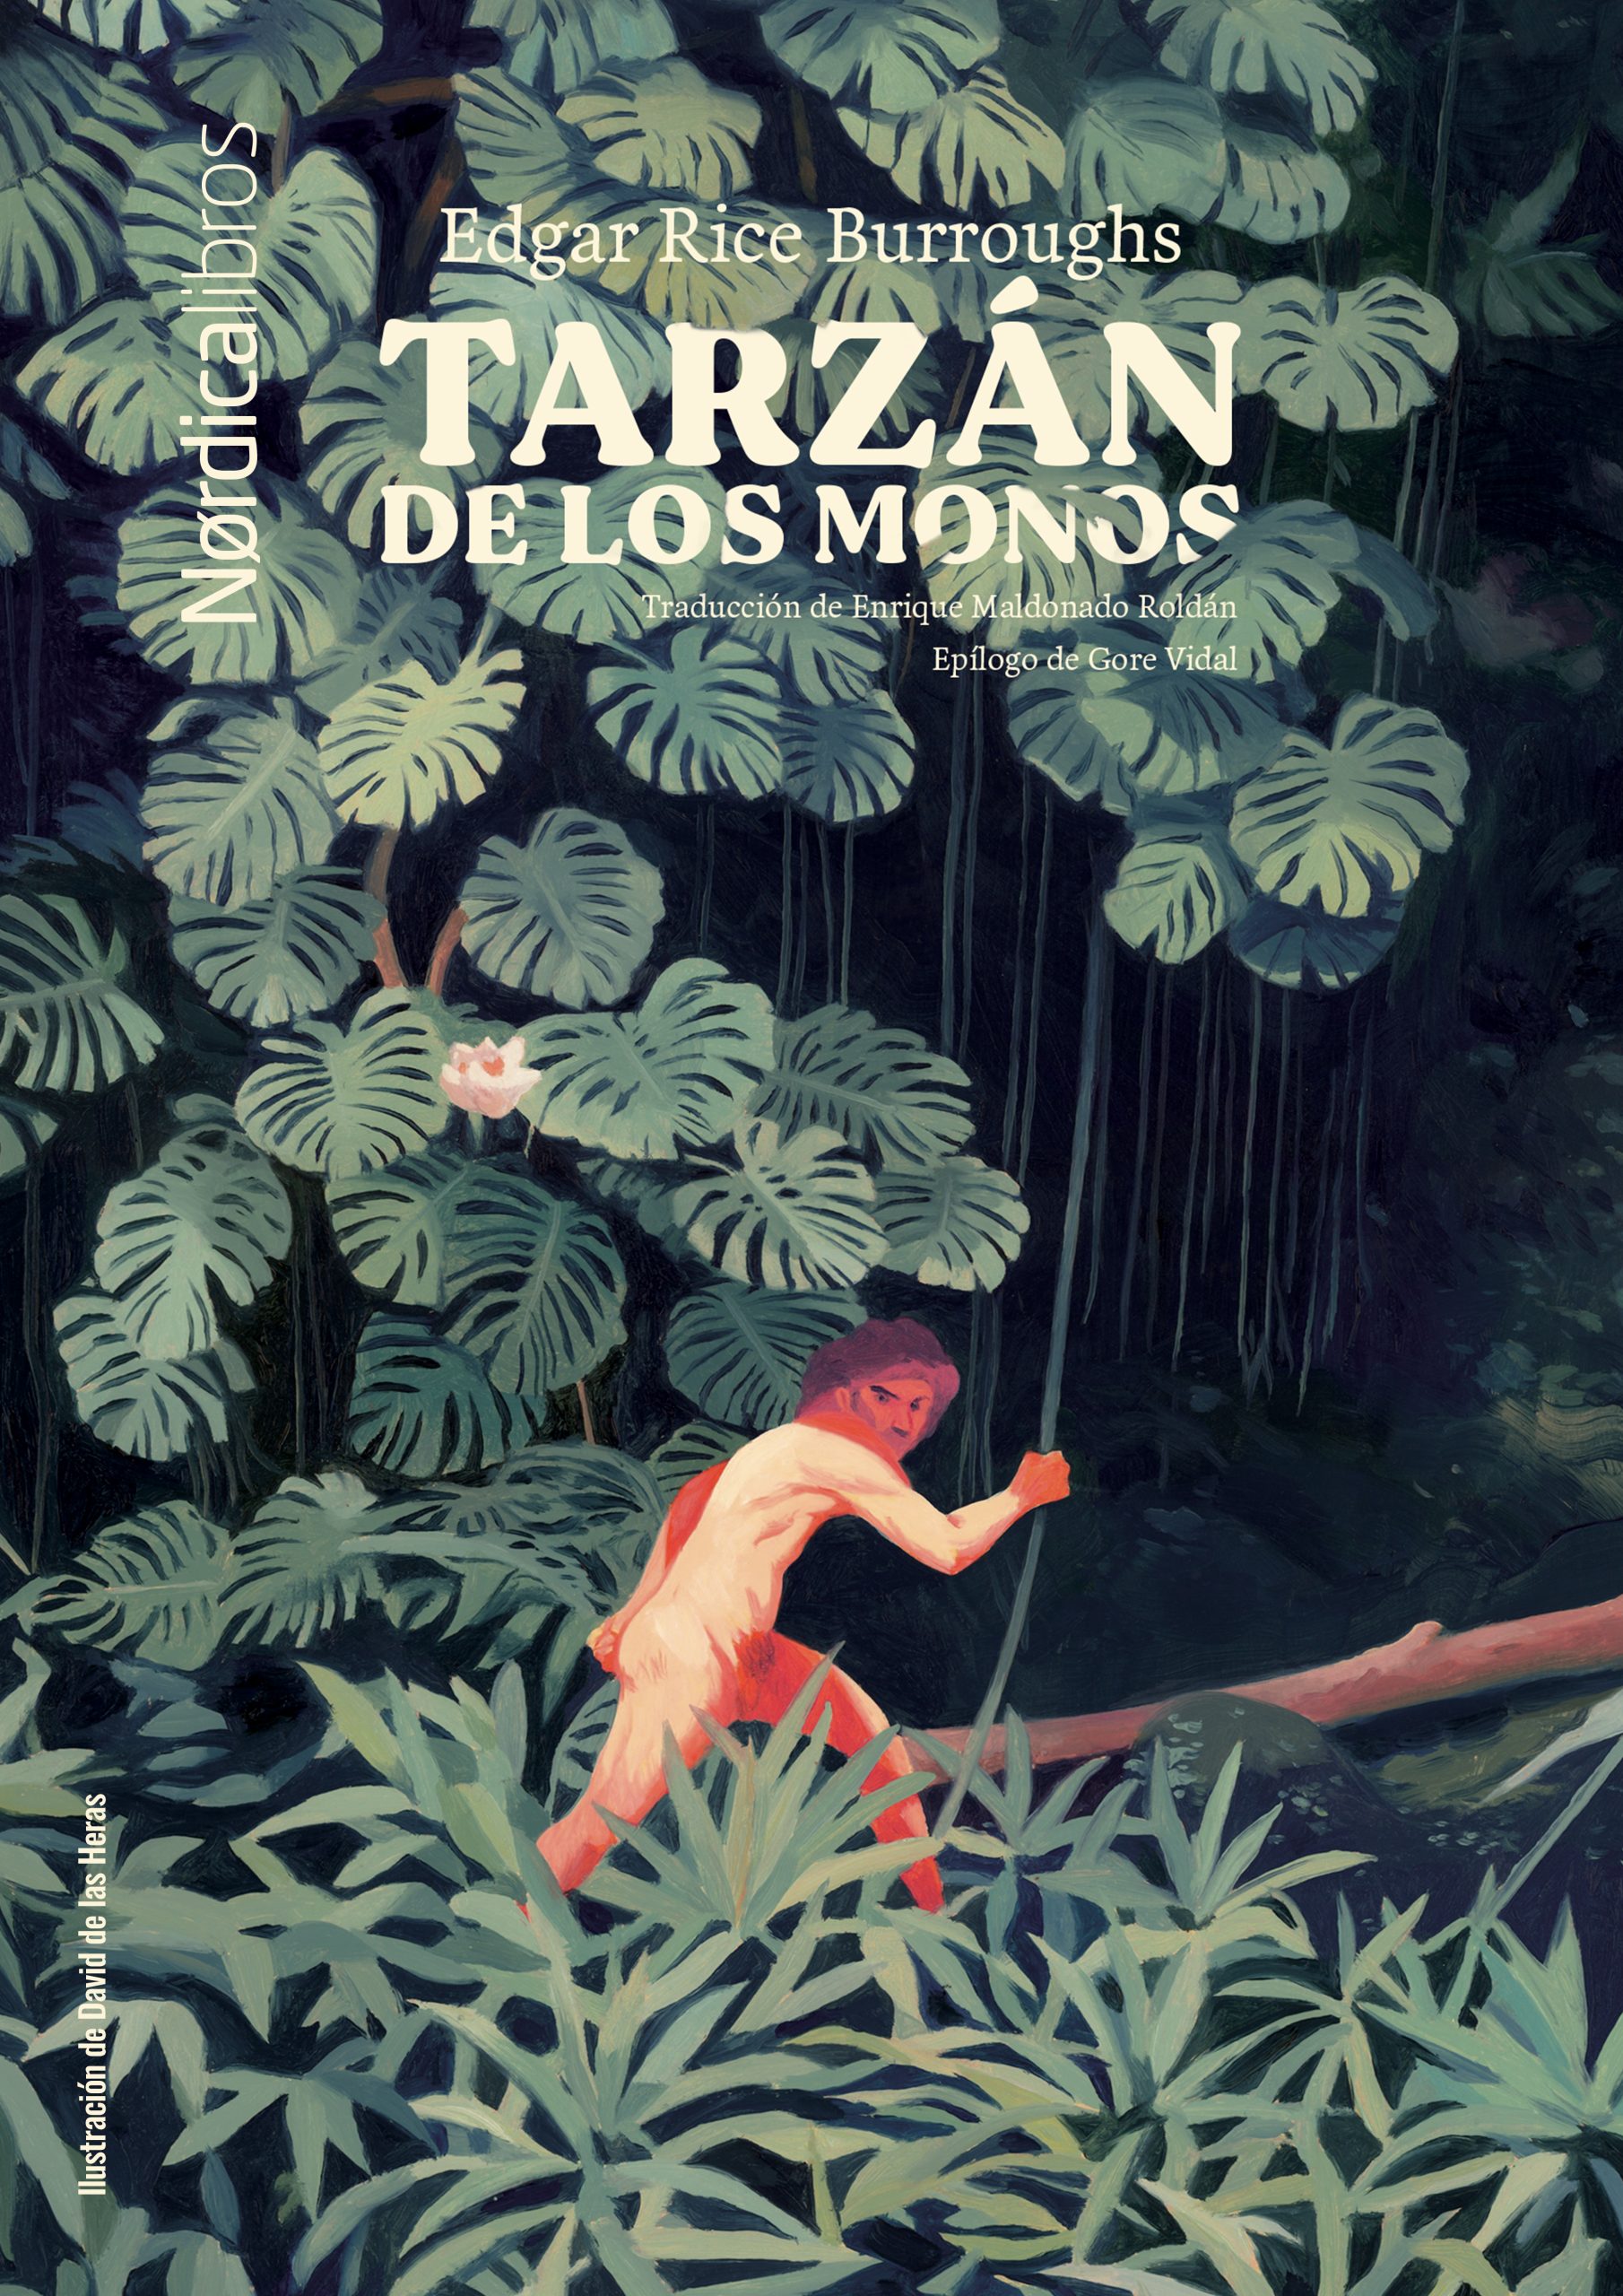 Portada del libro Tarzán de los monos, de Edgar Rice Burroughs editado por Nordica Libros